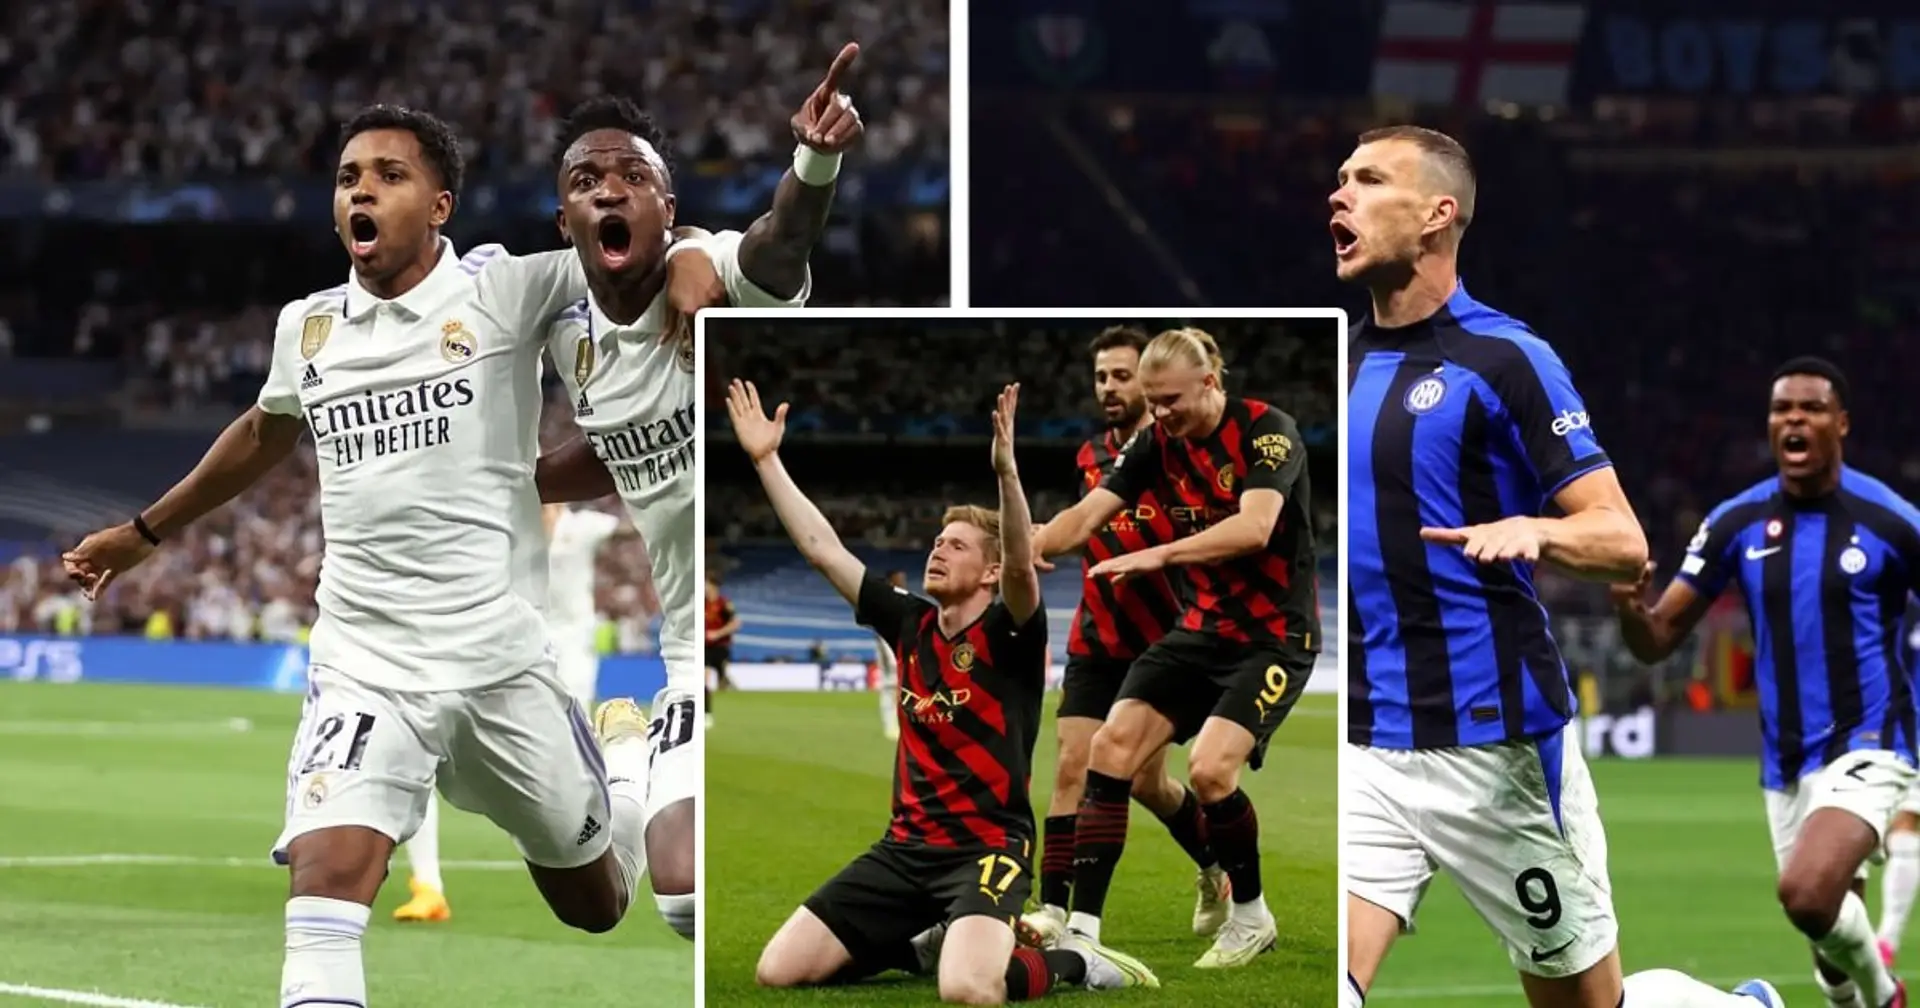 De Bruynes Treffer gegen Real Madrid zum besten Tor der Woche in der Champions League gewählt